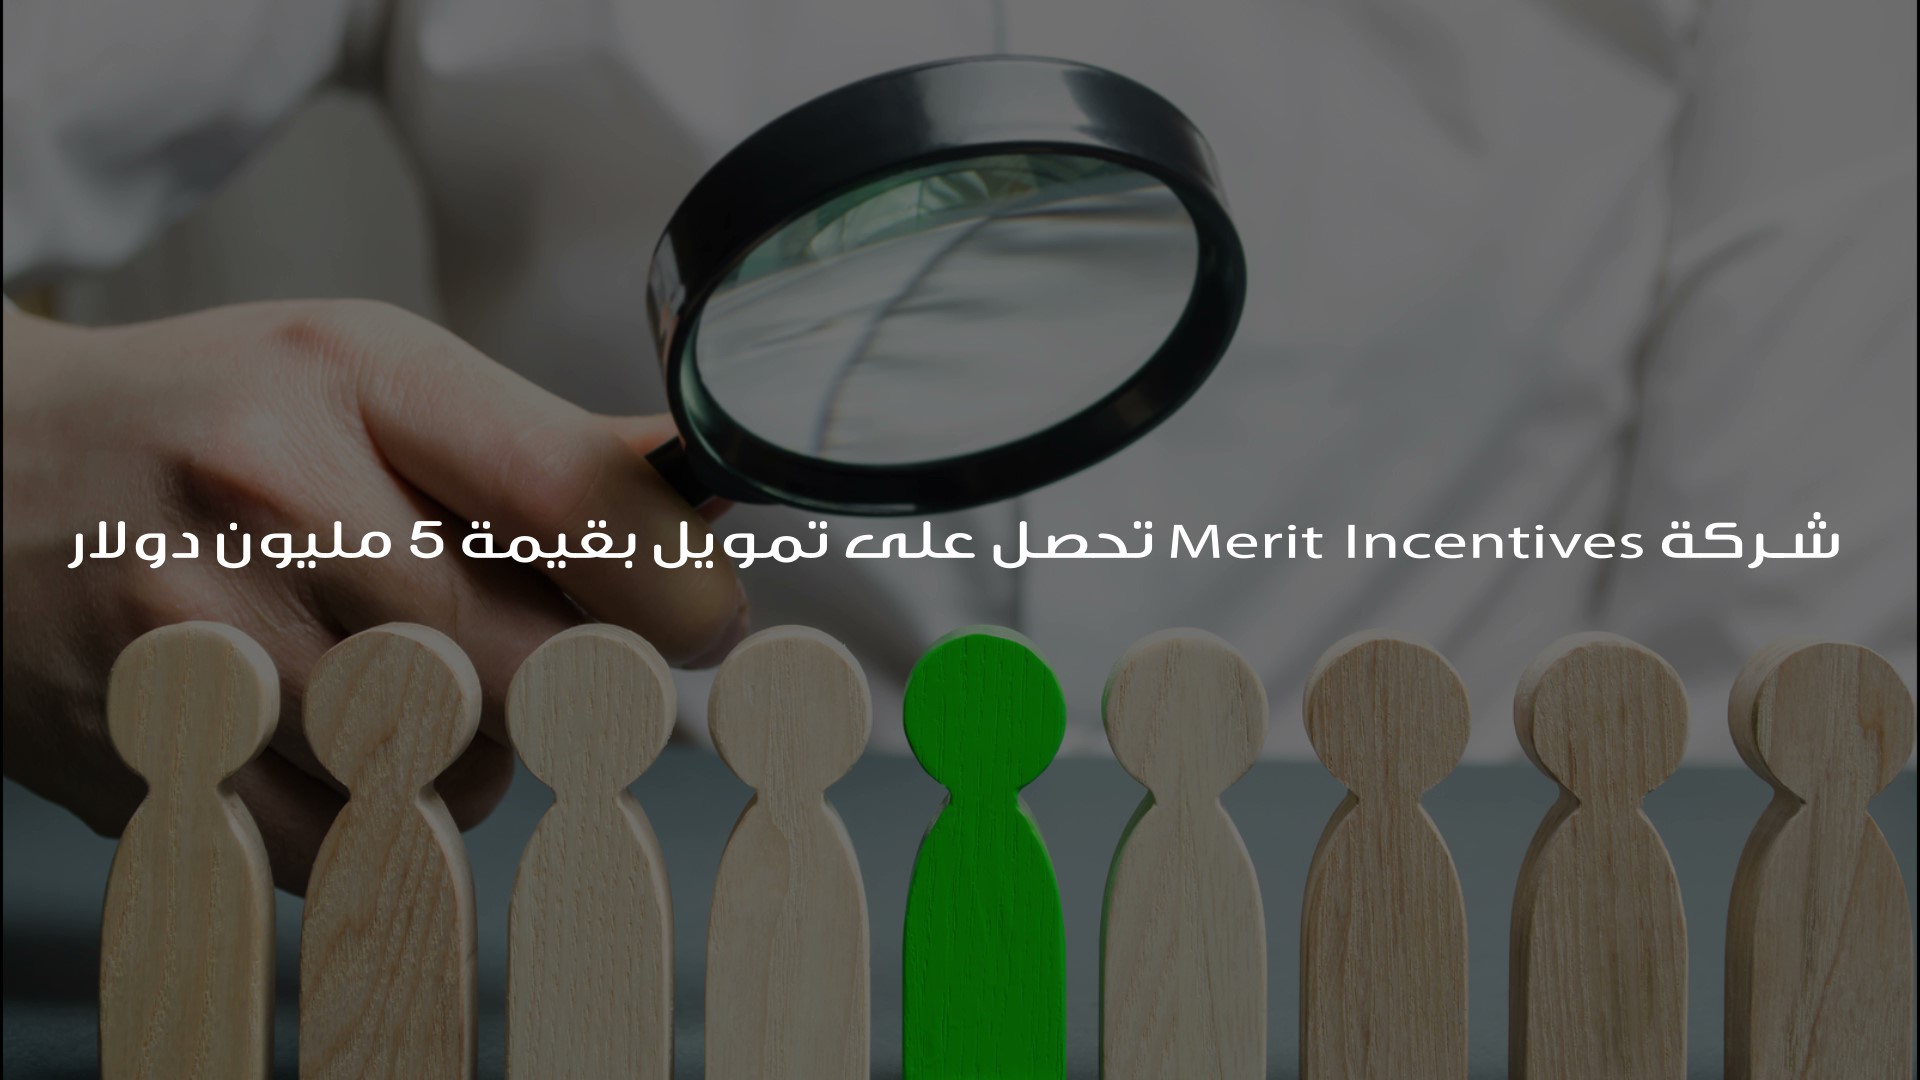 شركة Merit Incentives تحصل على تمويل بقيمة 5 مليون دولار أمريكي